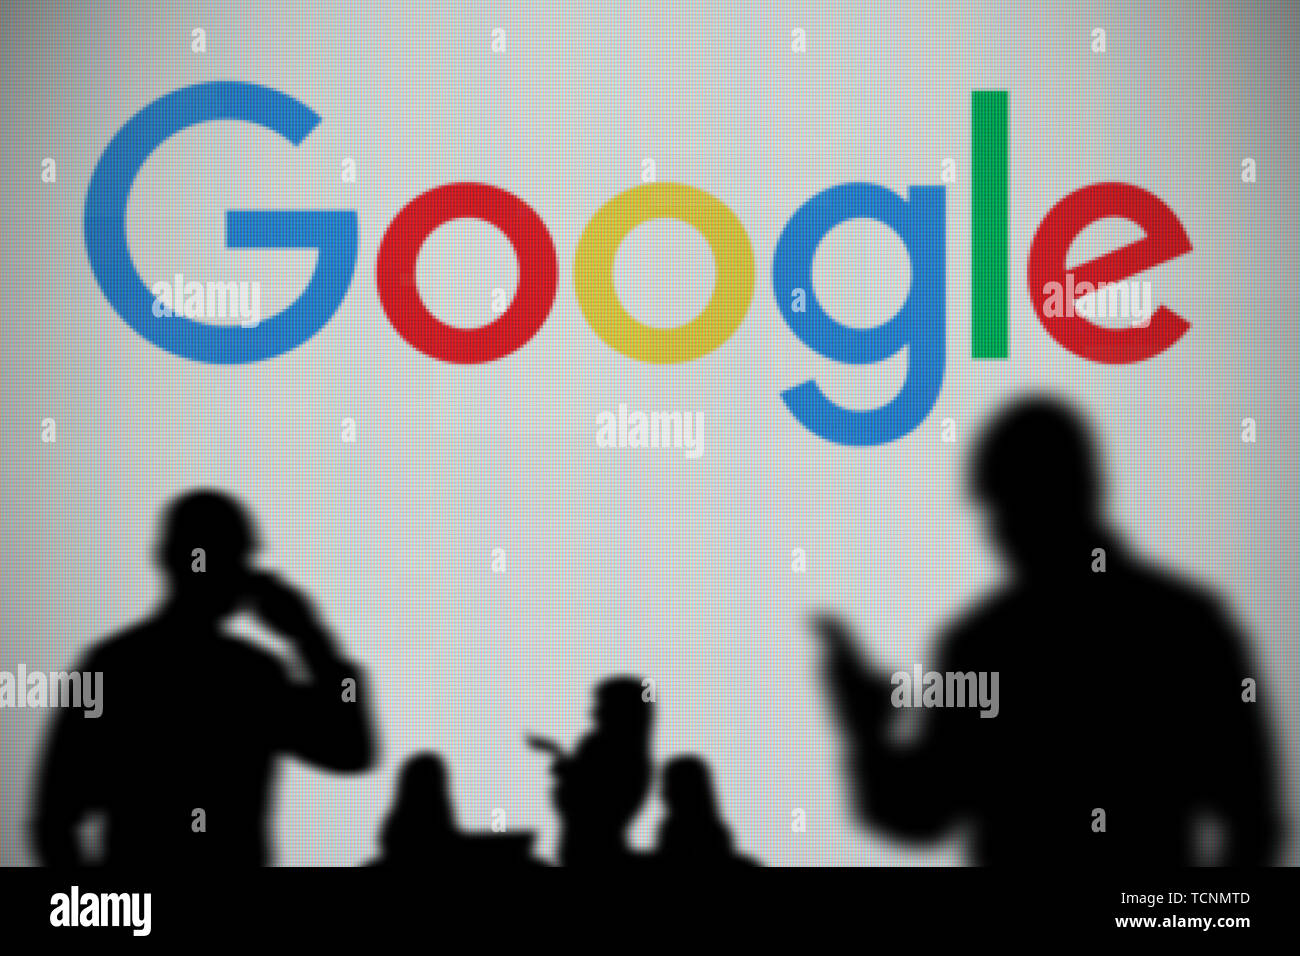 Il logo di Google è visibile su uno schermo a LED in background mentre si profila una persona utilizza uno smartphone in primo piano (solo uso editoriale) Foto Stock